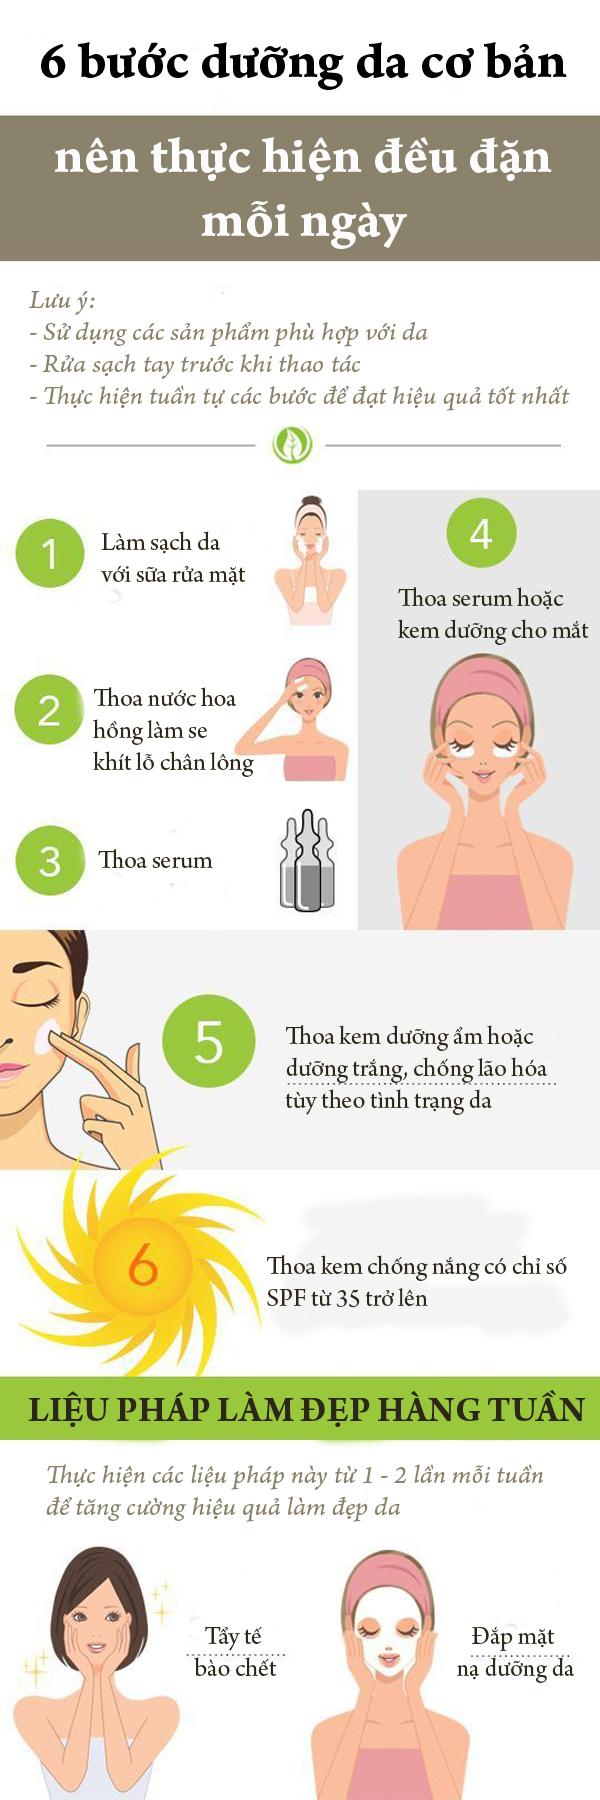 6 bước dưỡng da cơ bản nên thực hiện mỗi ngày để da khỏe đẹp